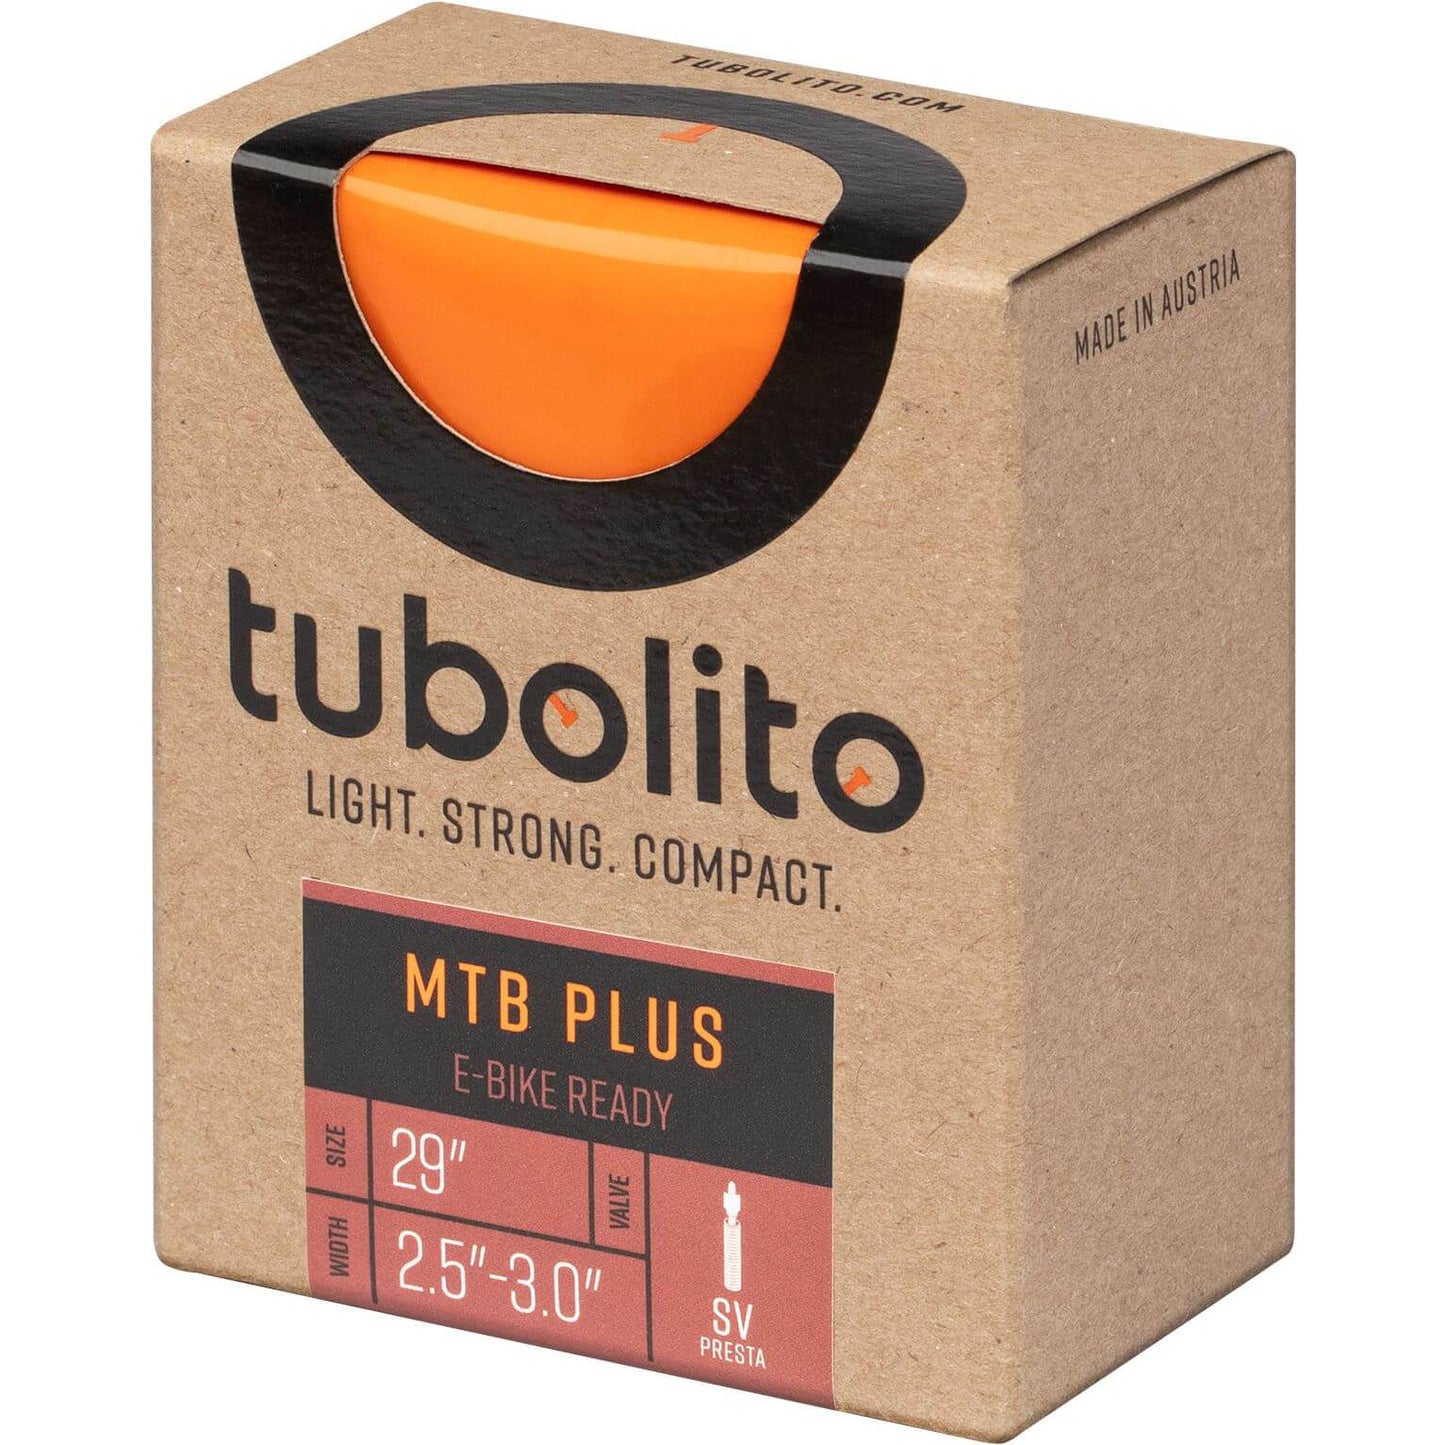 Tubolito bnb tubo mtb plus e -mtb 29 x 2,5 -3.0 fv 42mm